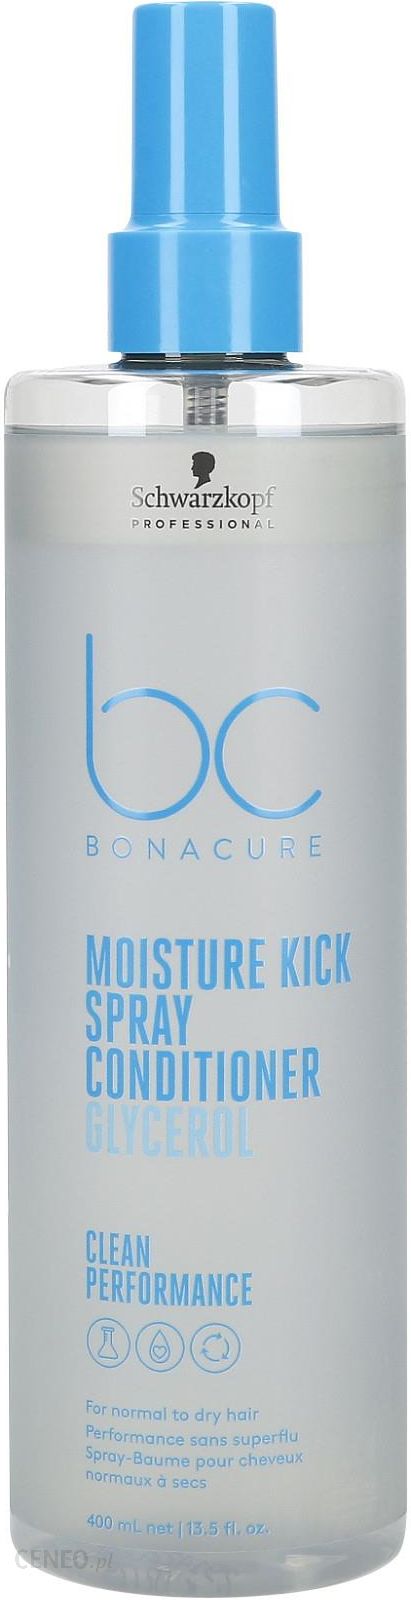 odżywka do włosów schwarzkopf bc bonacure moisture kick